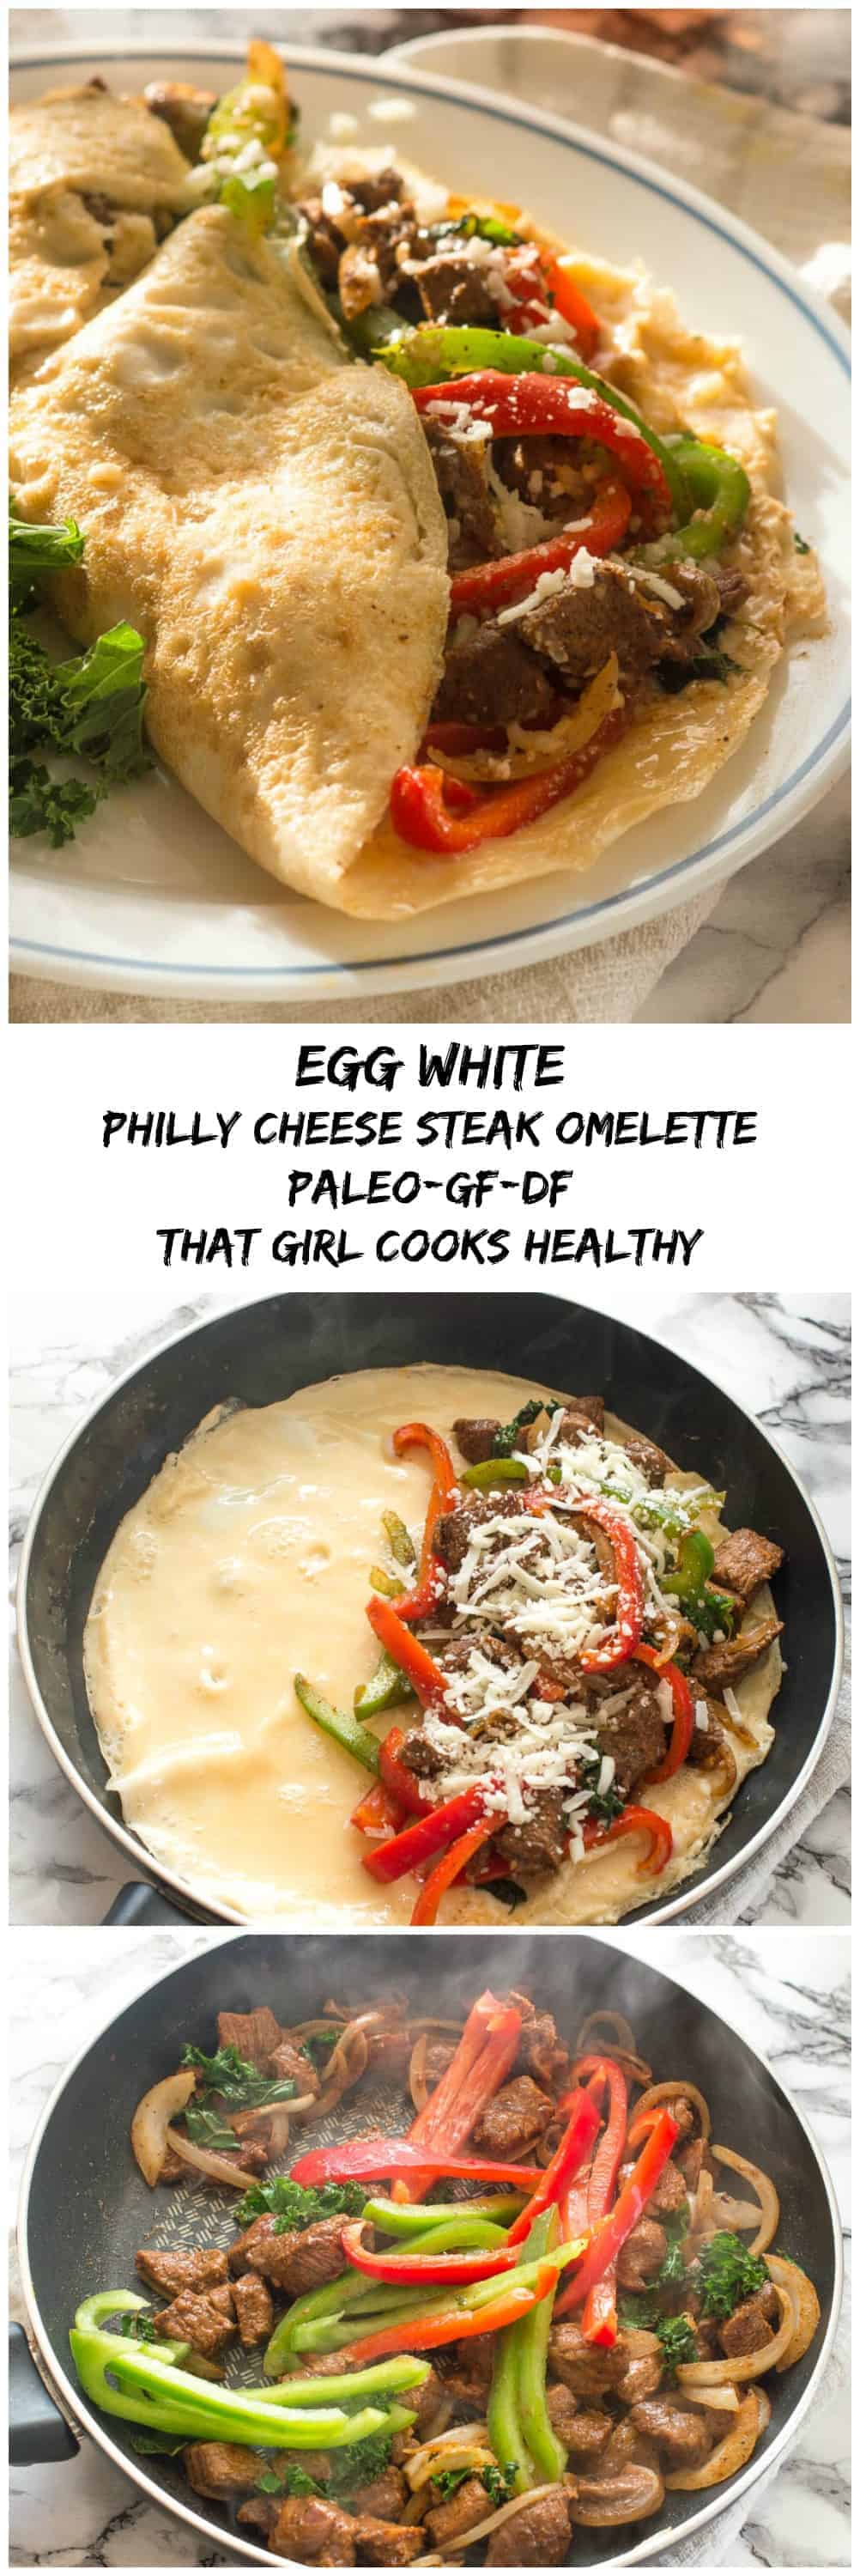 Egg white philly cheese steak omelette